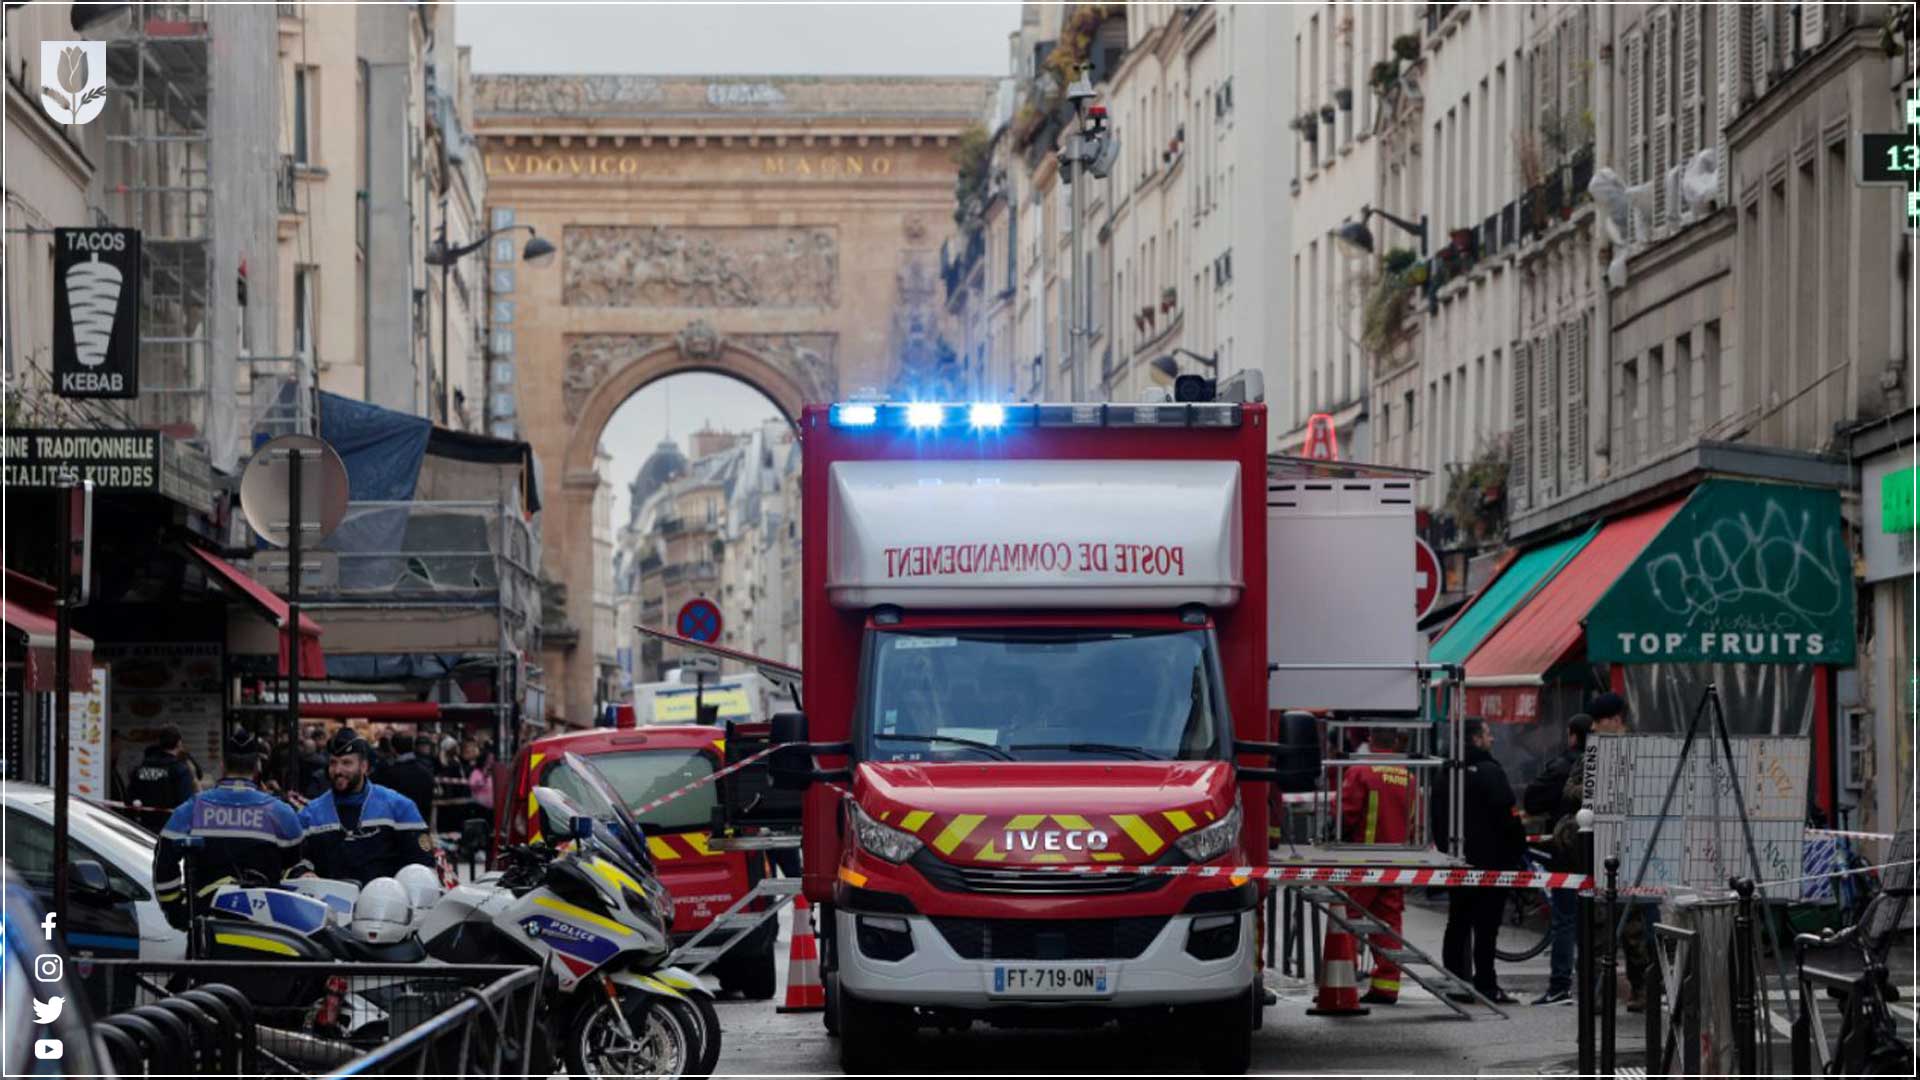 ماكرون يدين الهجوم الذي استهدف الكورد في باريس 